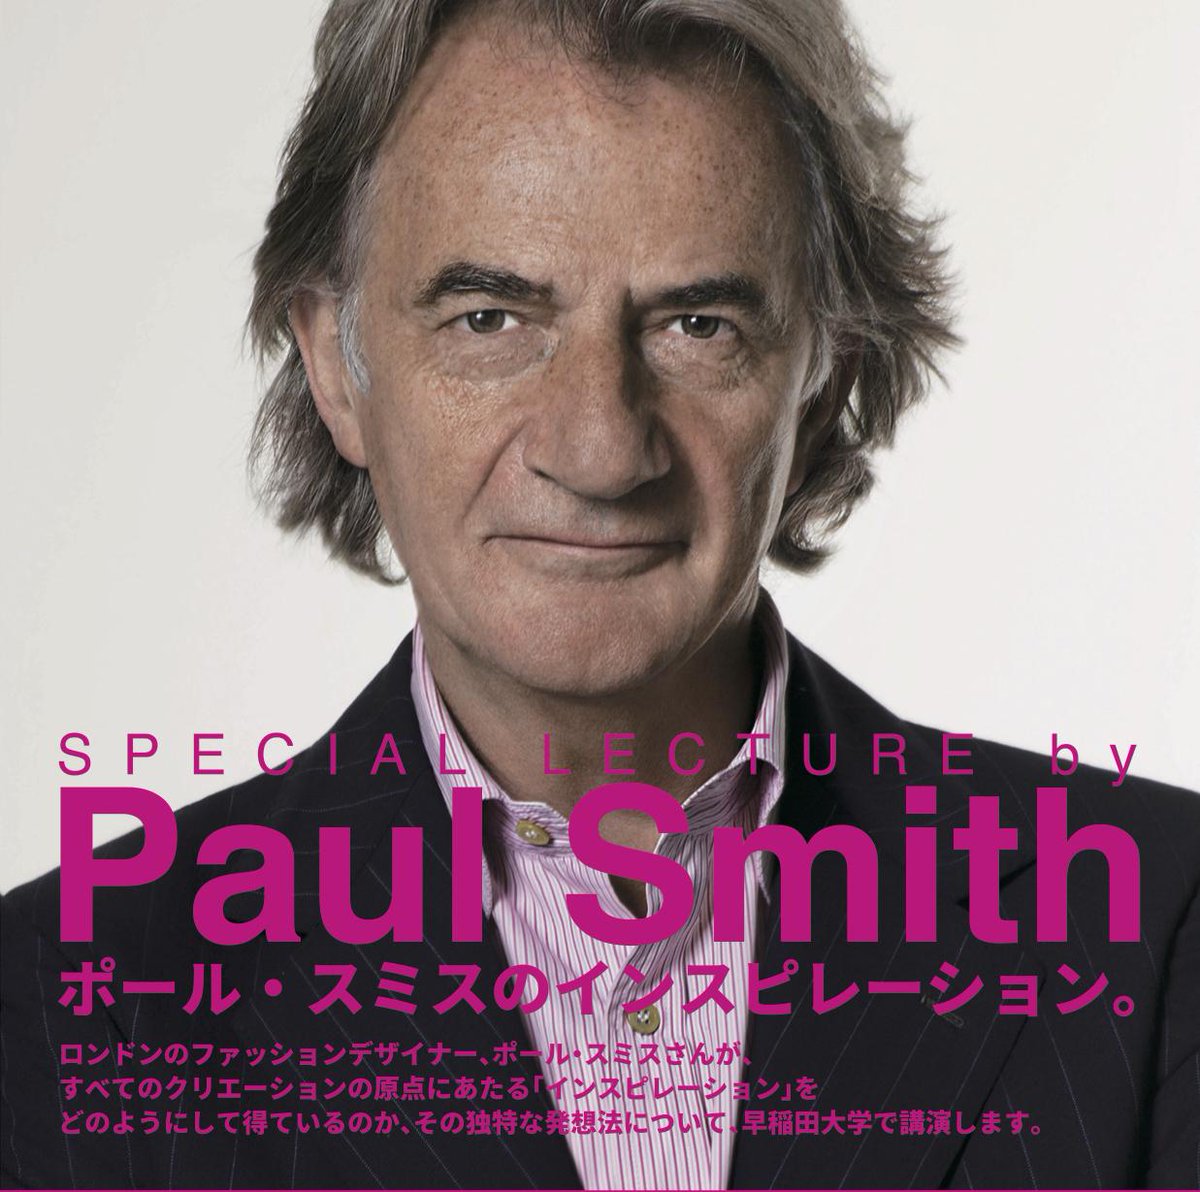 【早稲田で特別講演】ポール・スミス：人が多すぎて入りきらない？じゃあ２回やるよ！→イケメンすぎる神対応と話題に